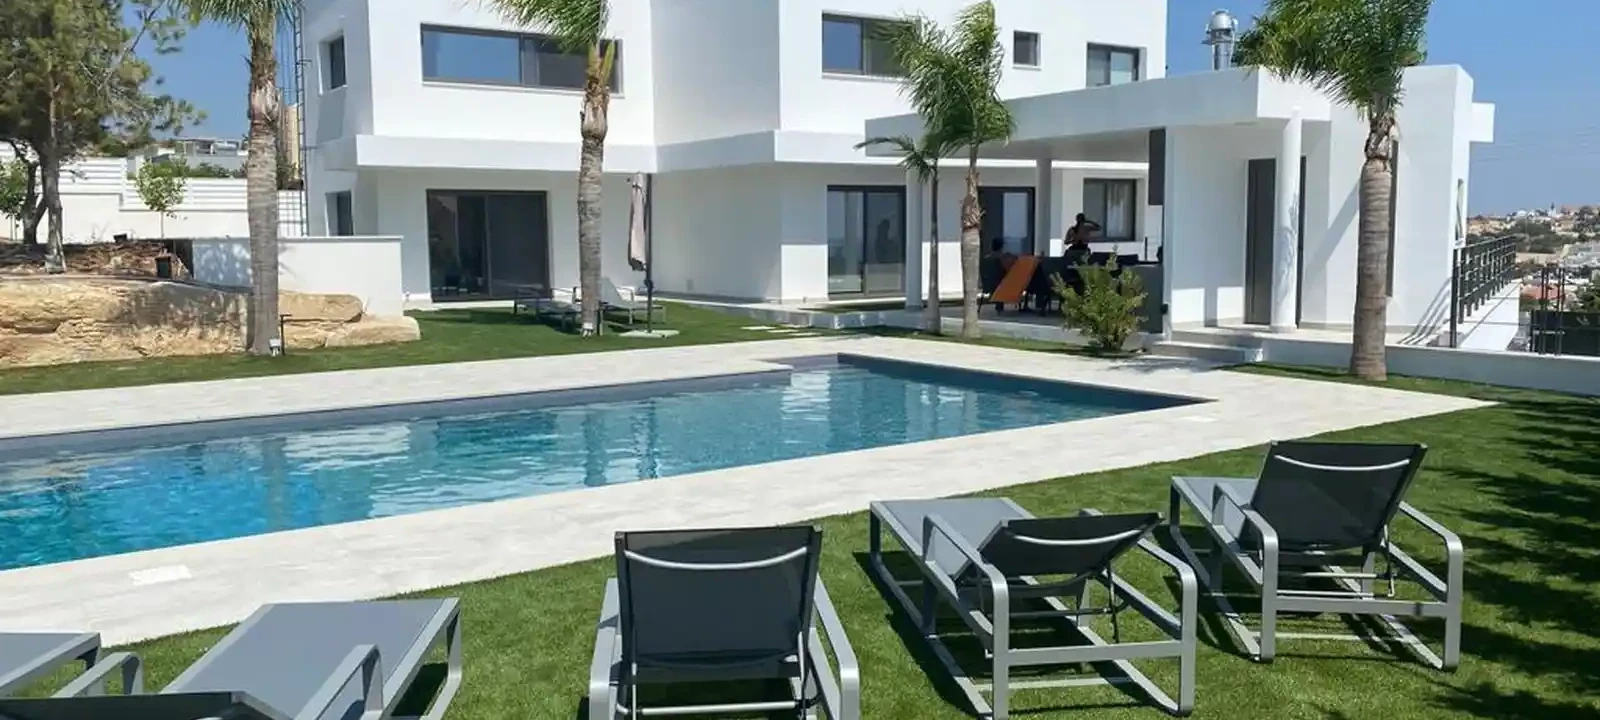 5-bedroom villa to rent €20.000, image 1